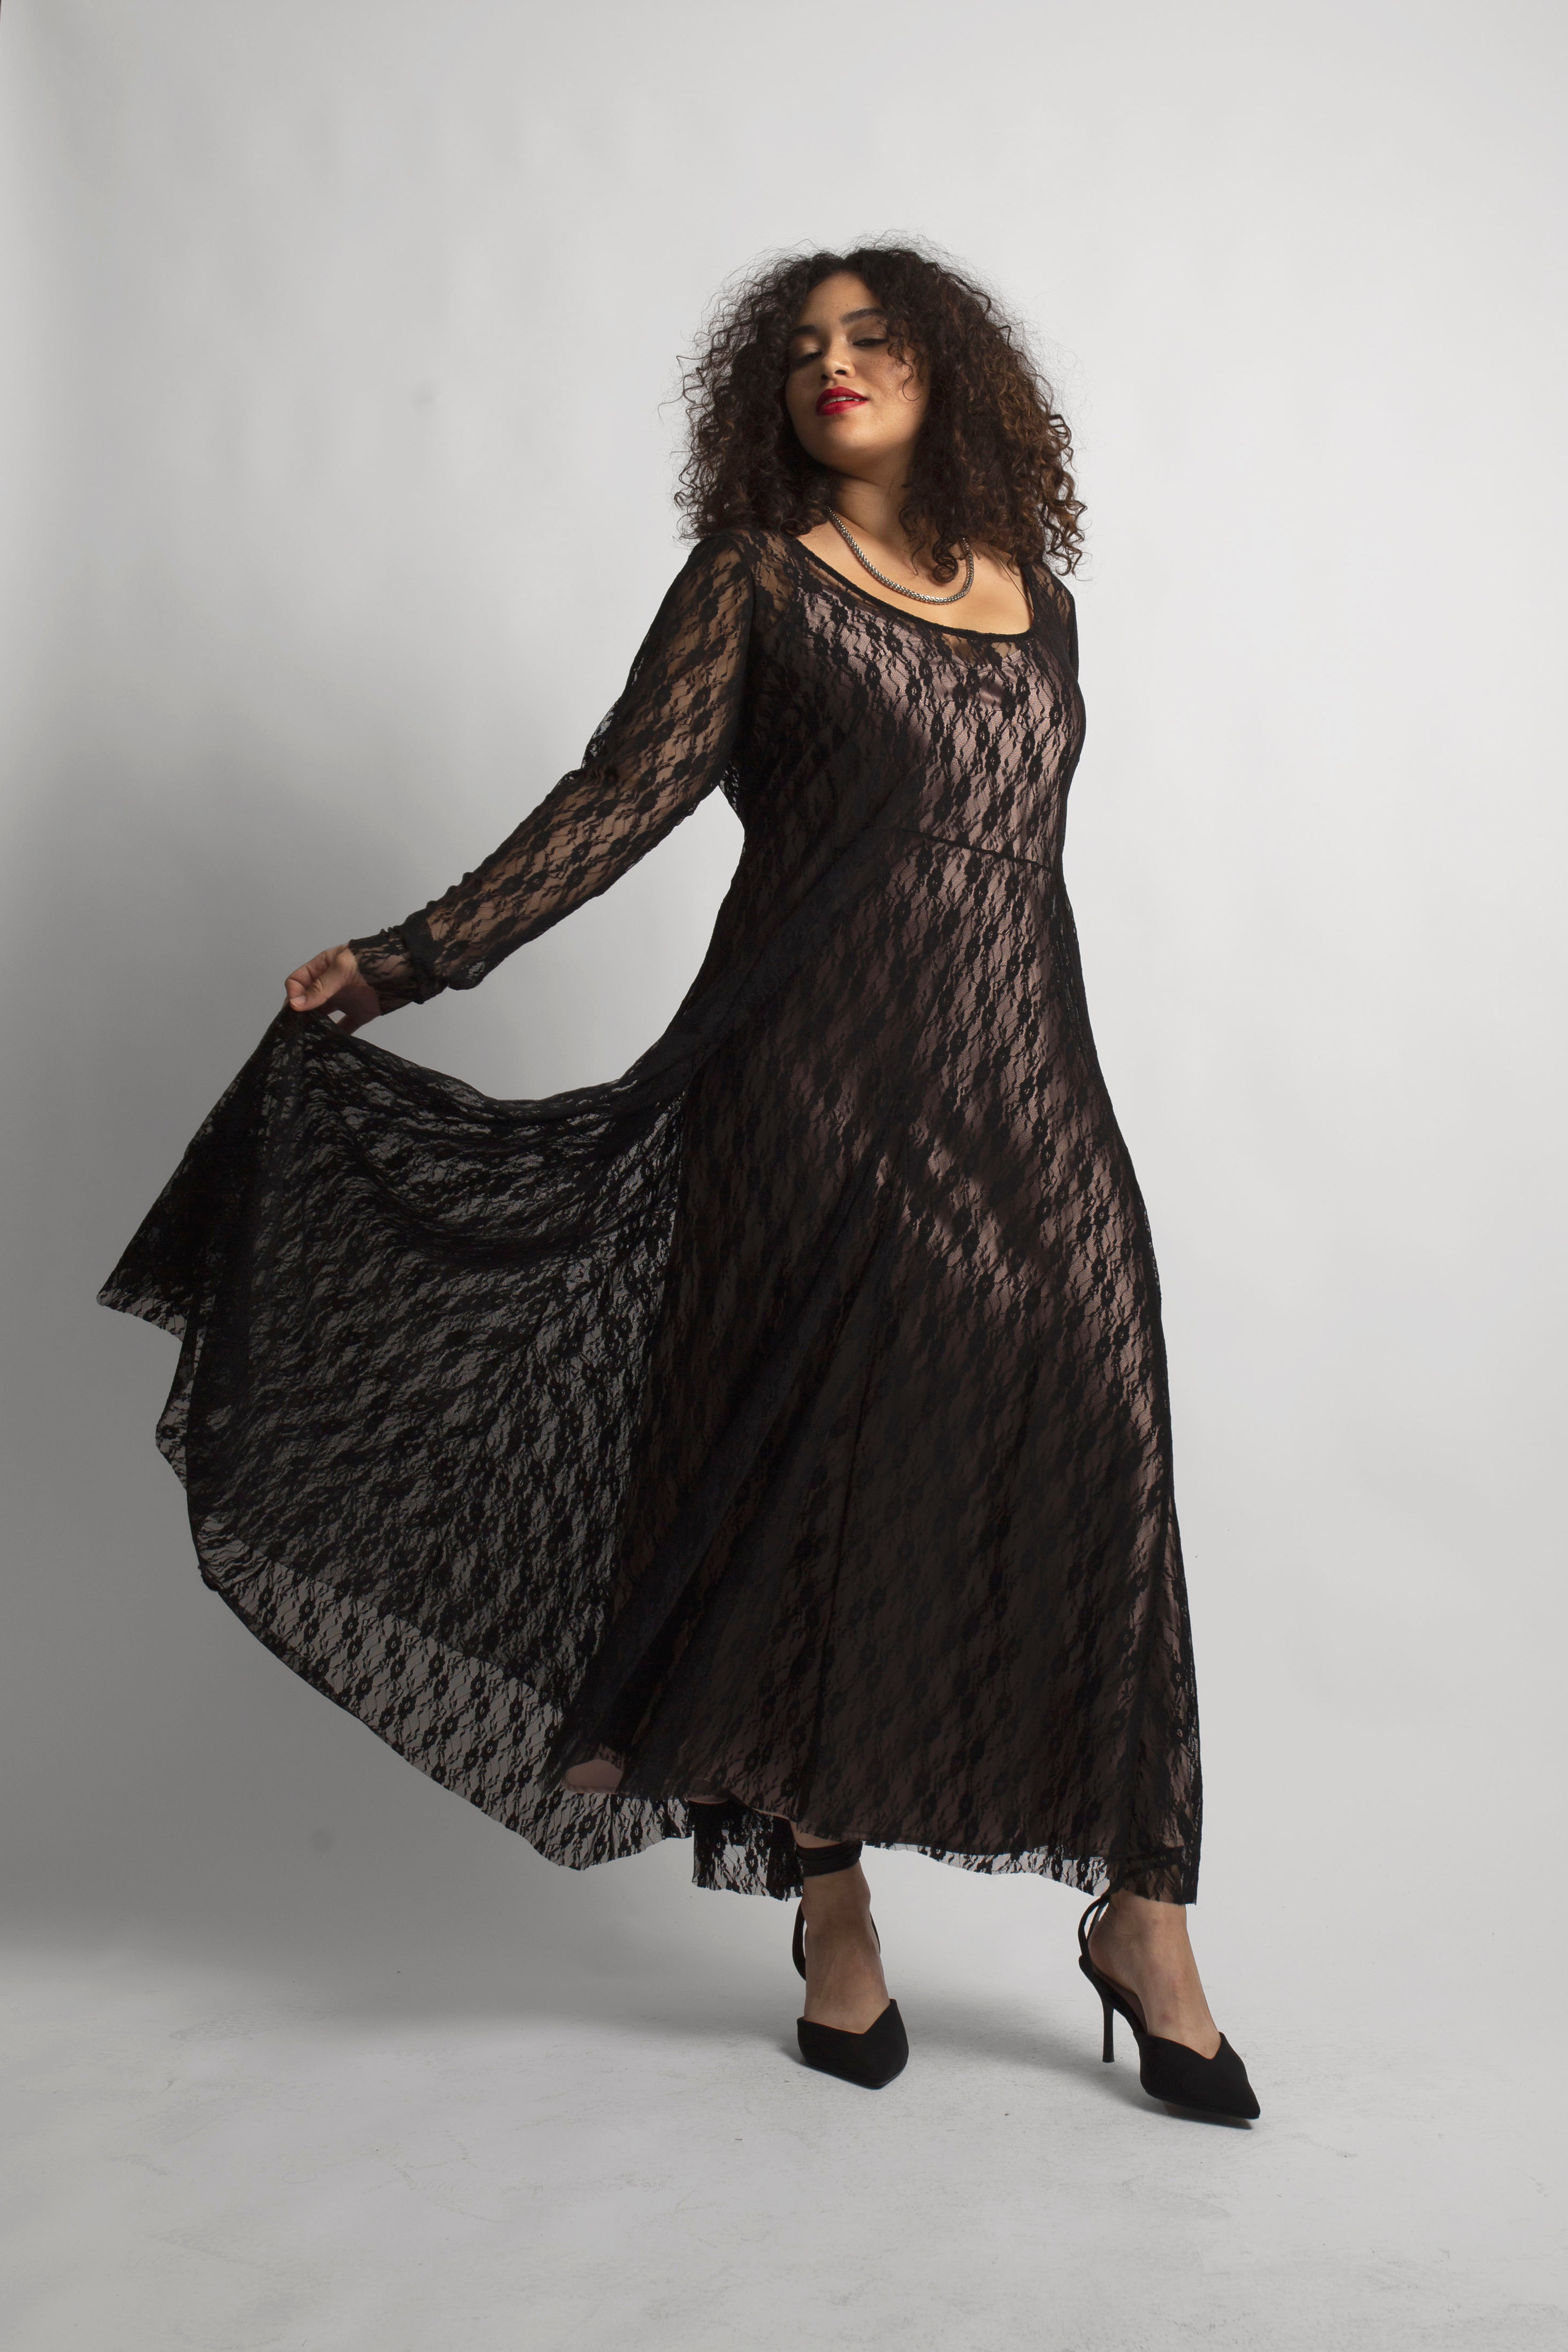 model wearing lace mesh dress